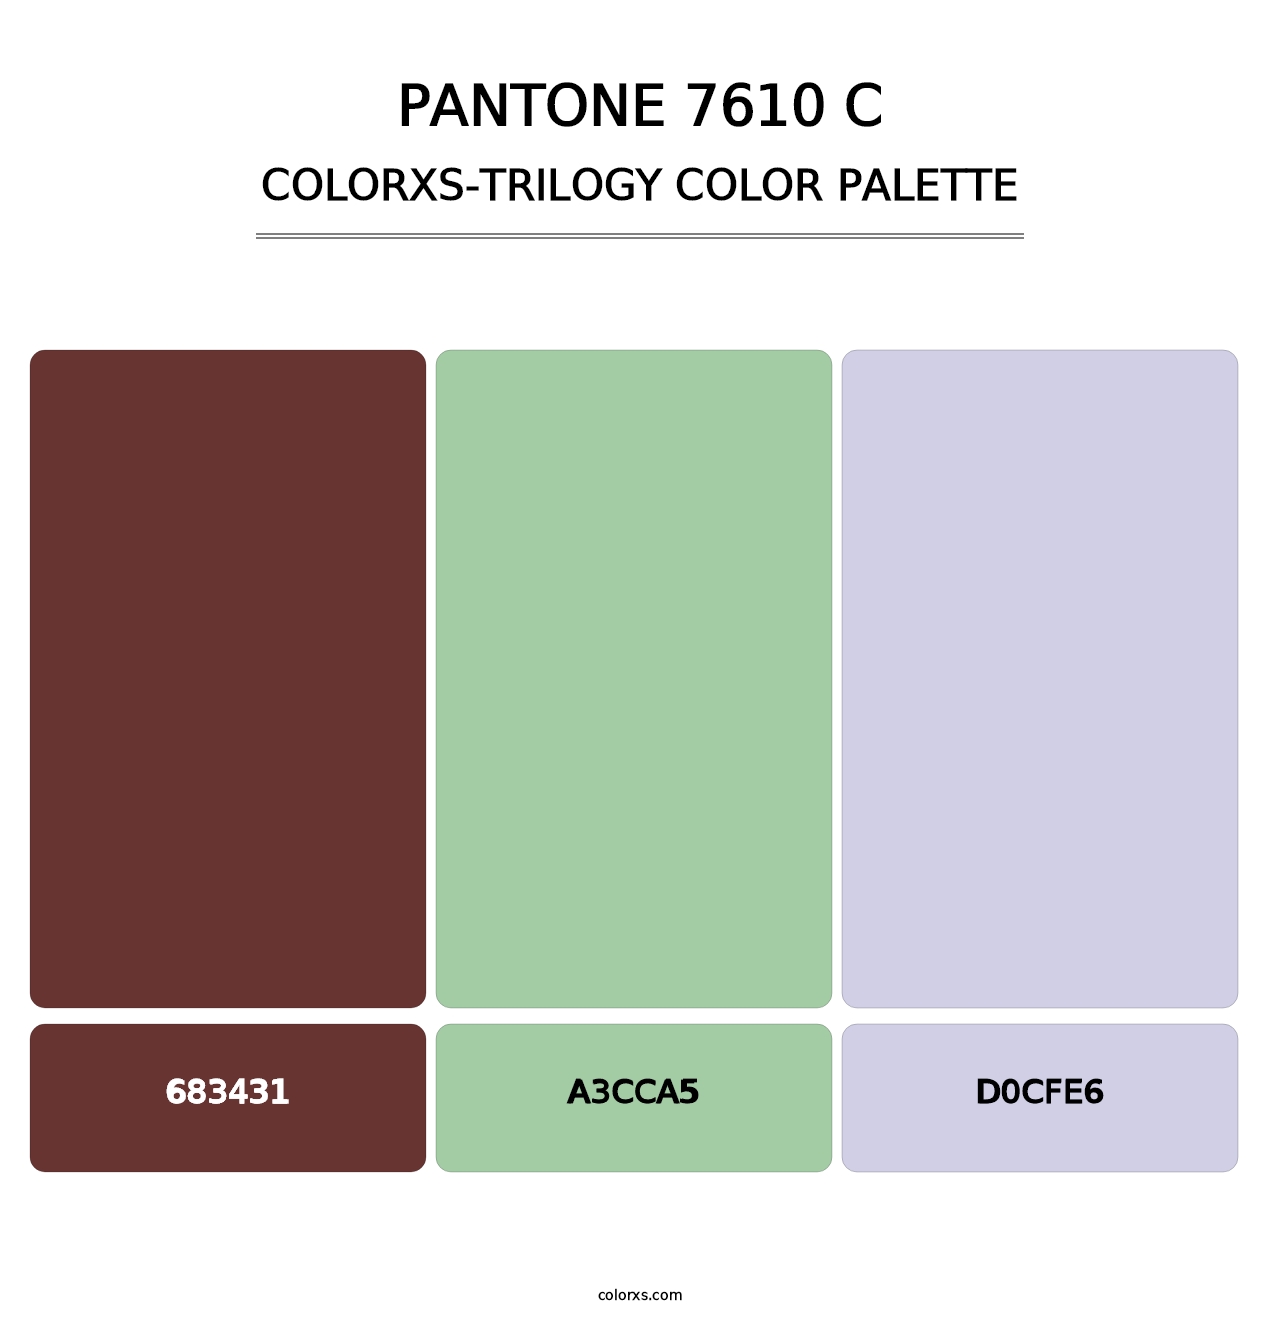 PANTONE 7610 C - Colorxs Trilogy Palette